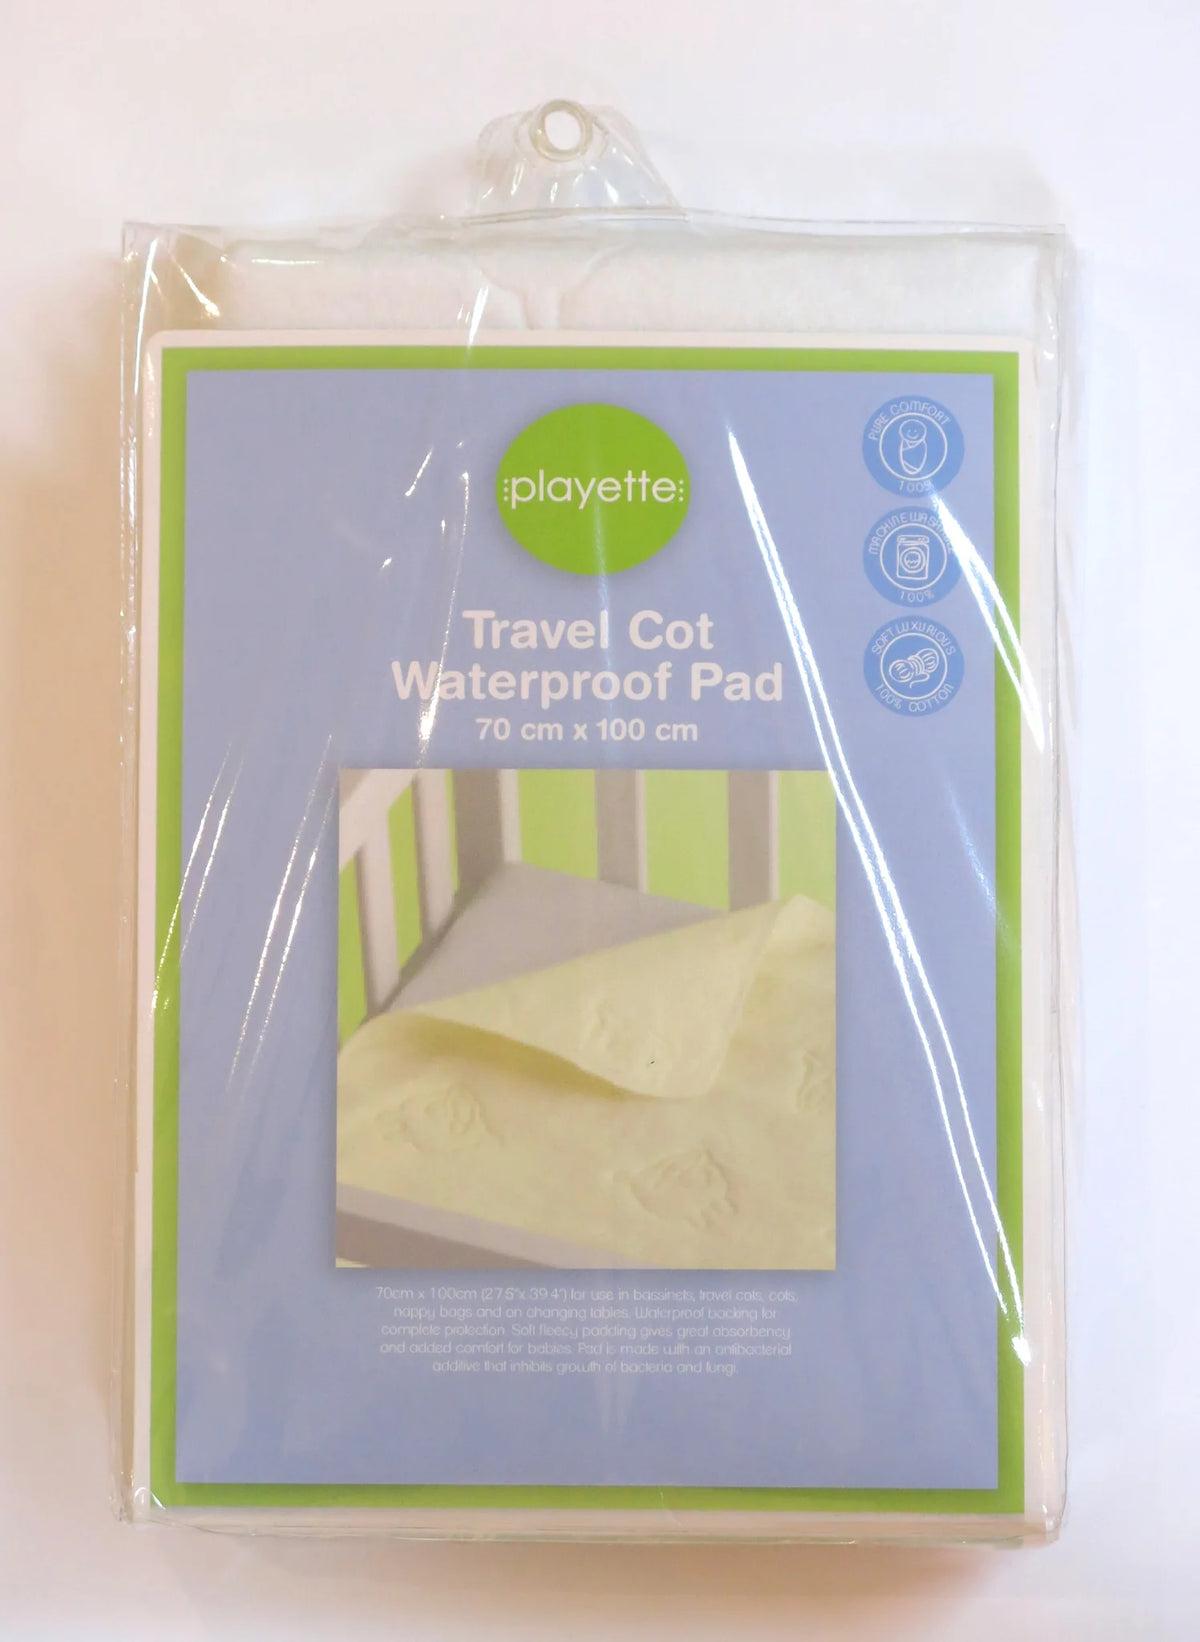 Playette Travel Cot Waterproof Pad